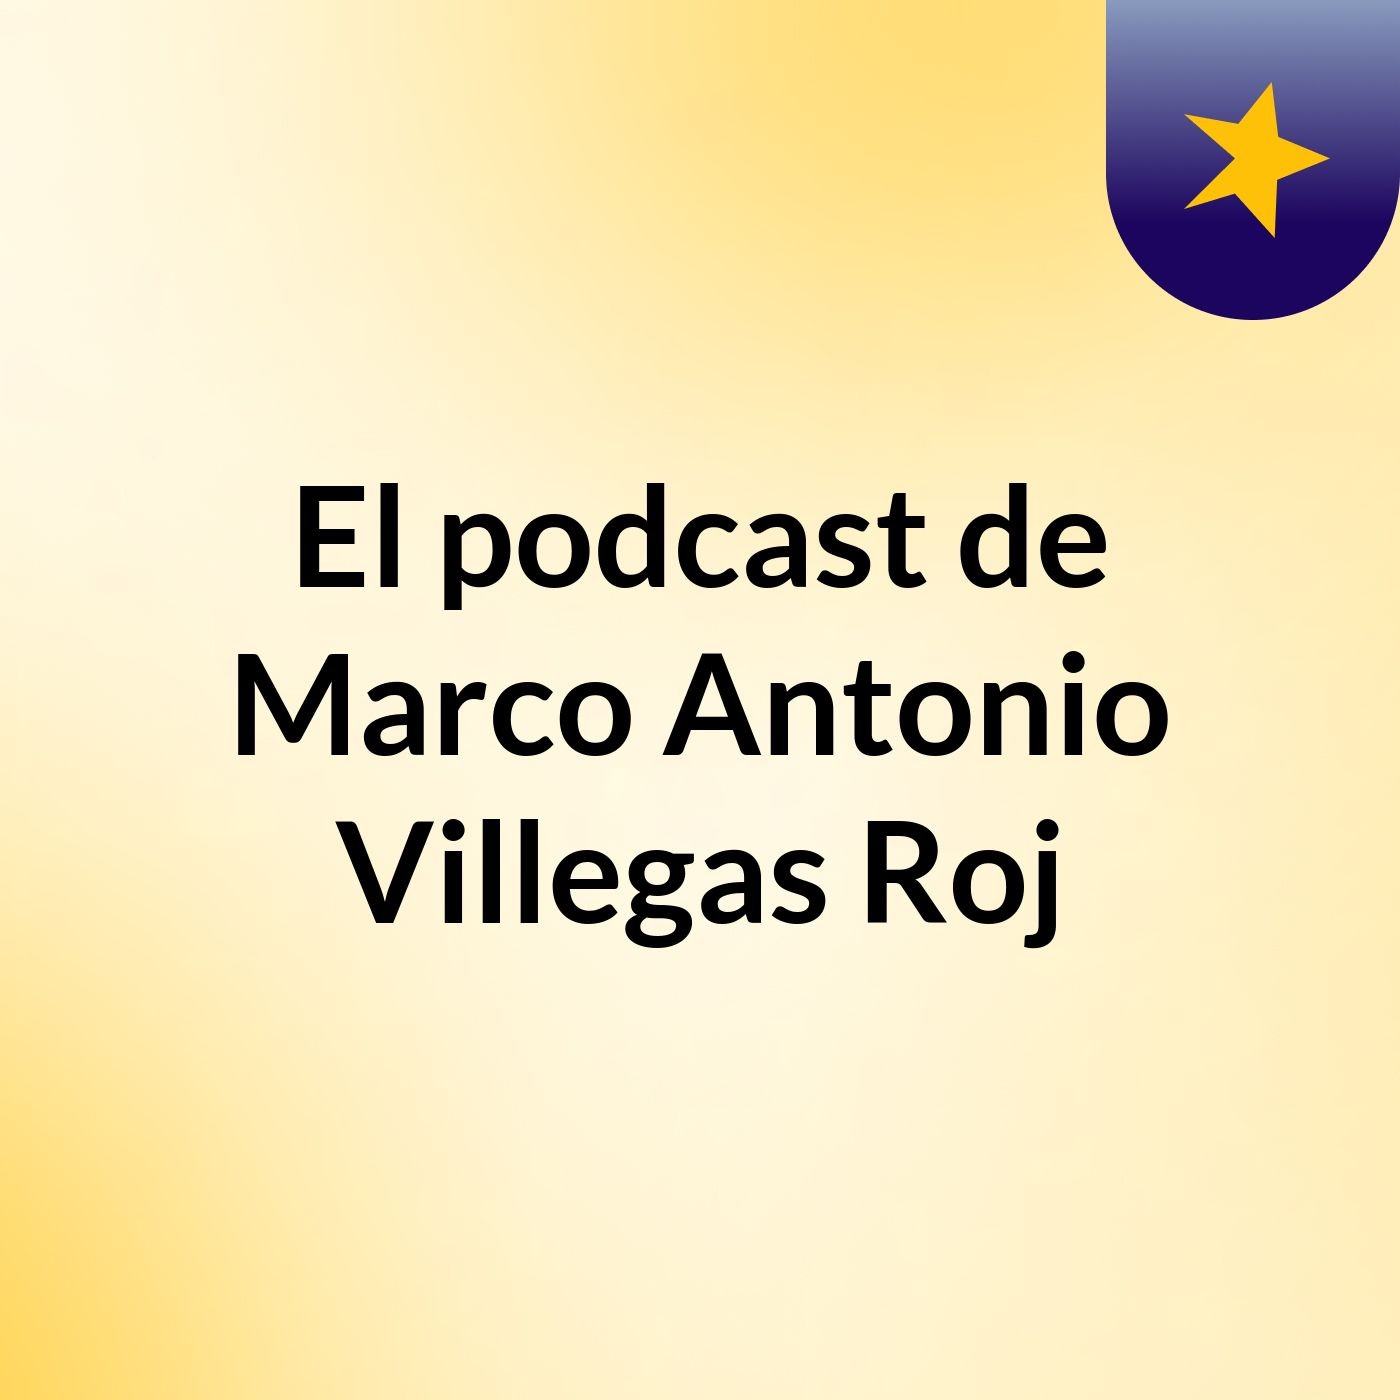 El podcast de Marco Antonio Villegas Roj